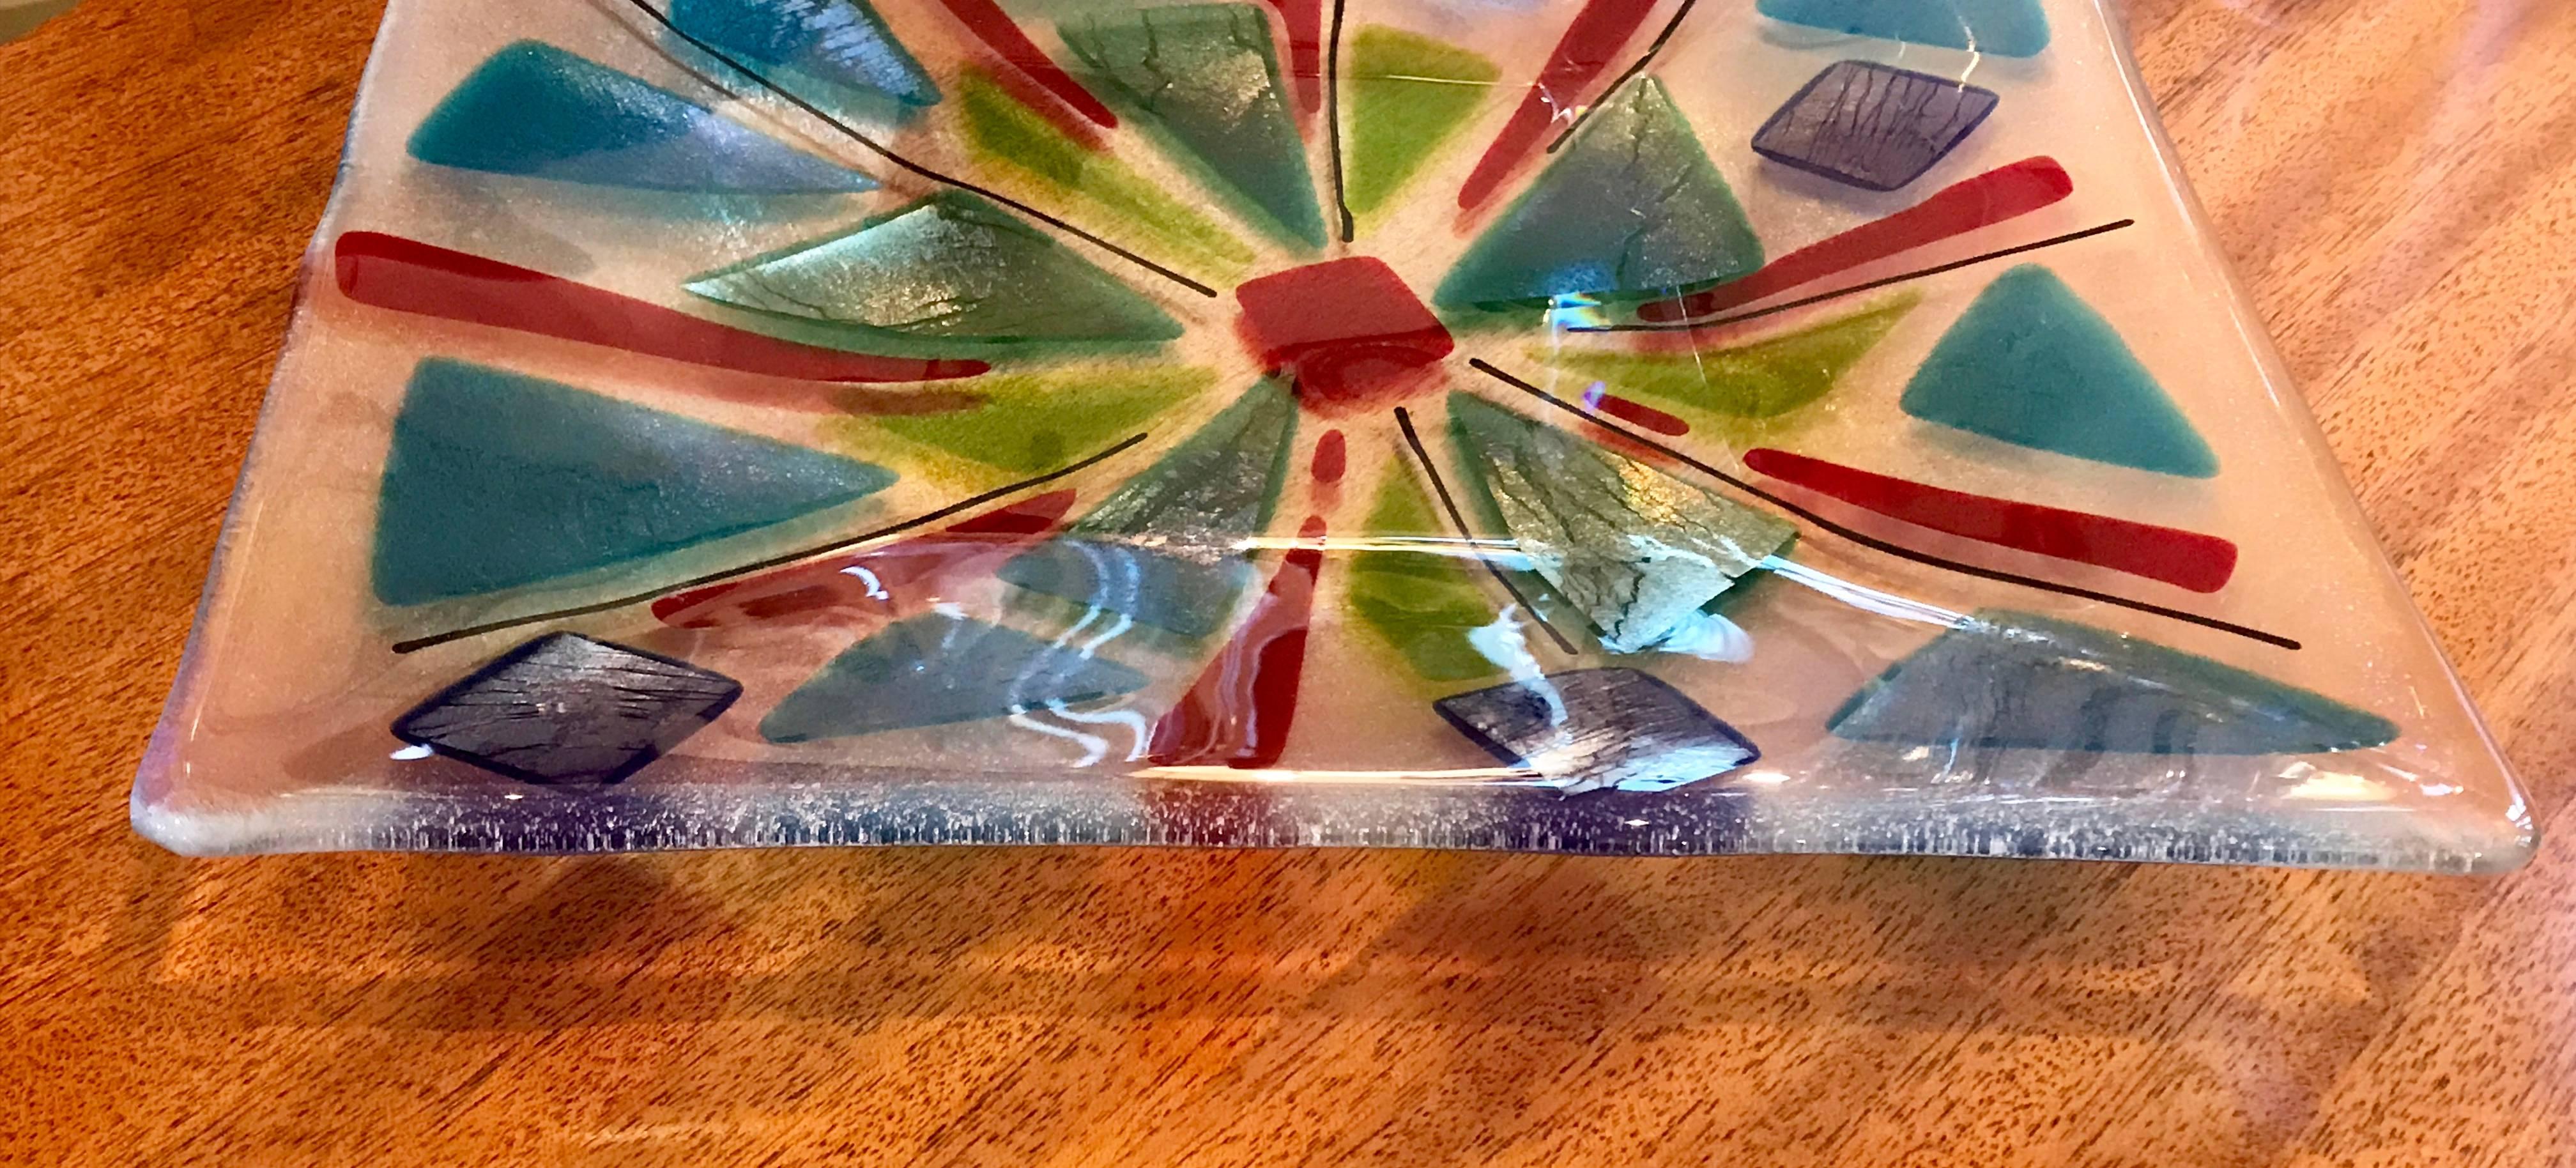 art glass tray